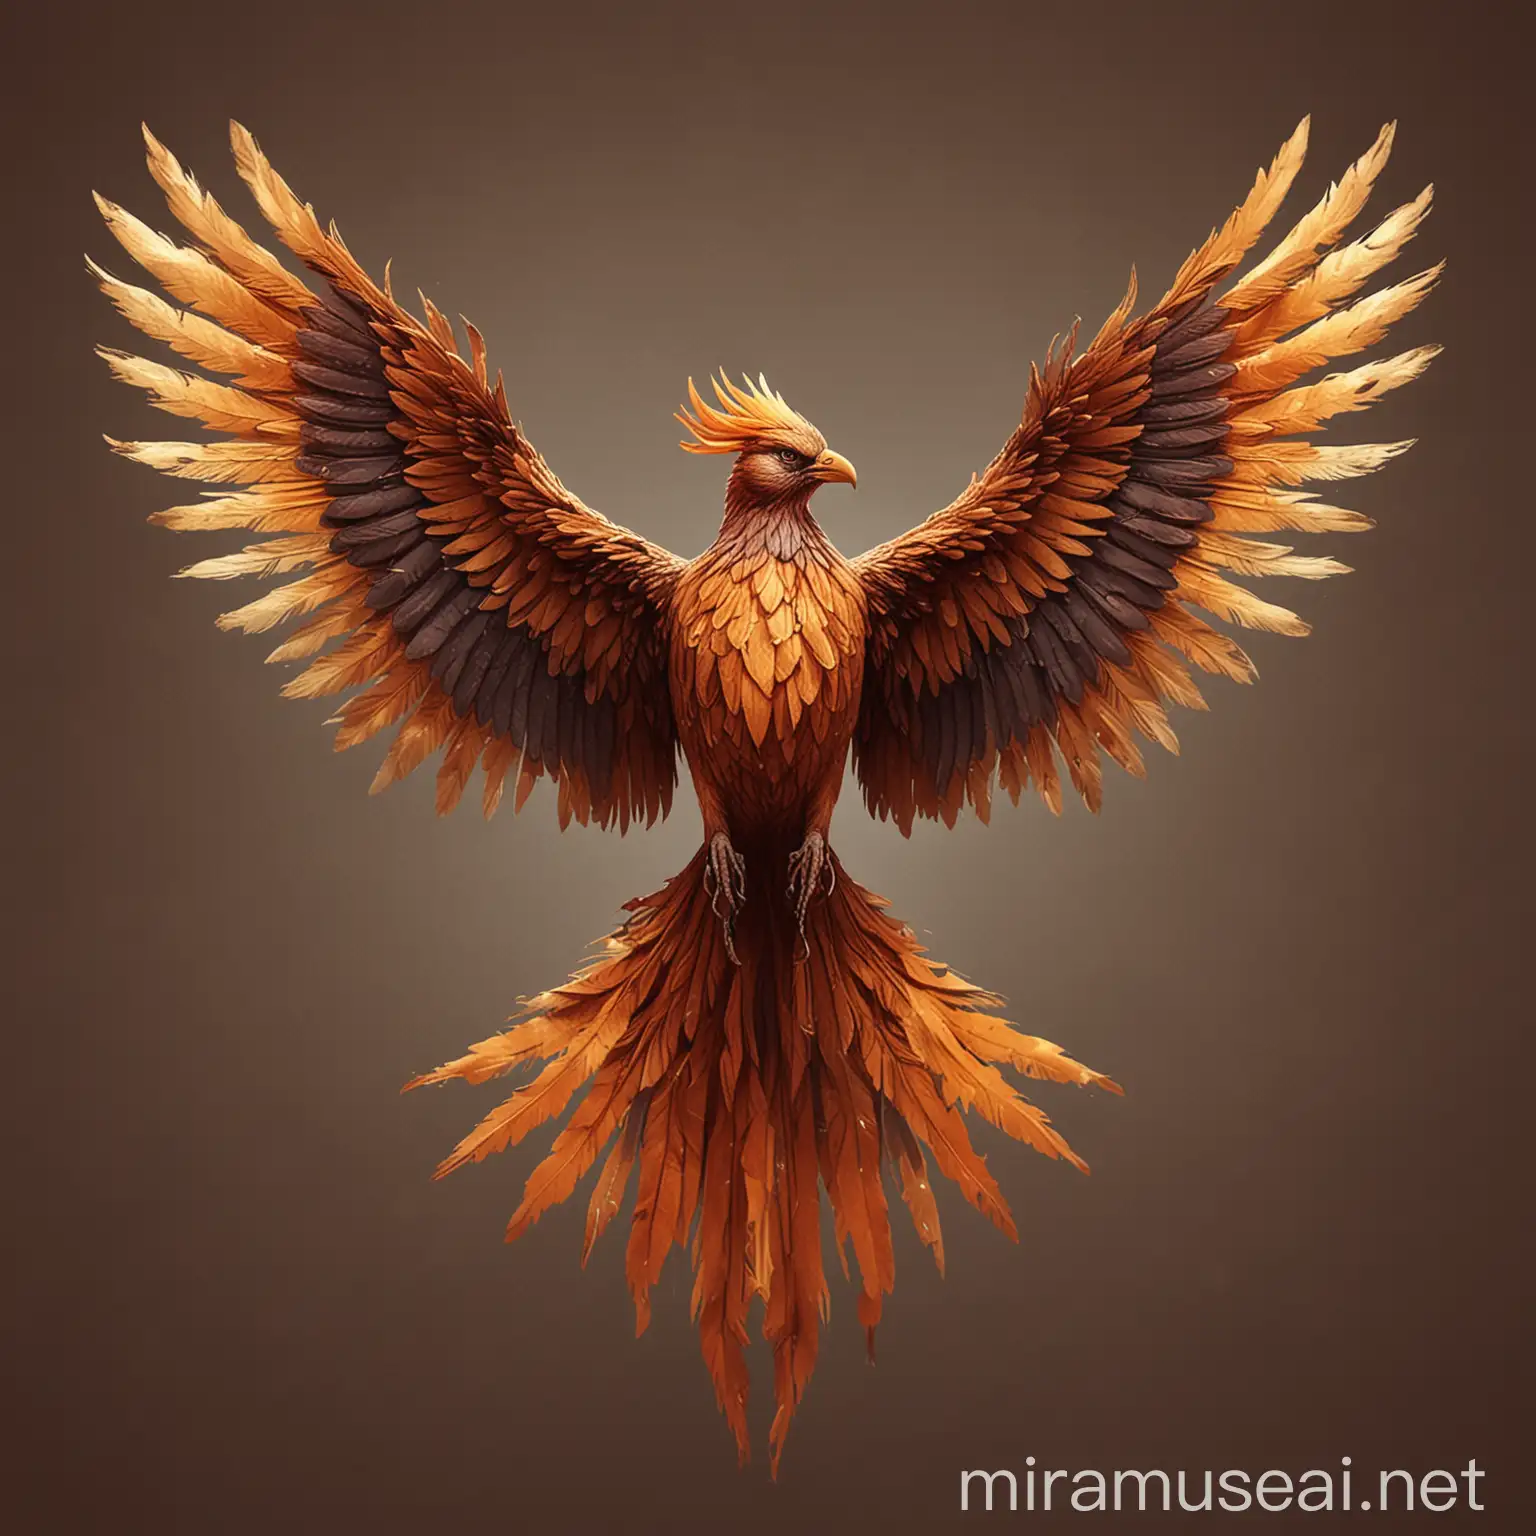 Majestic Phoenix in Flight